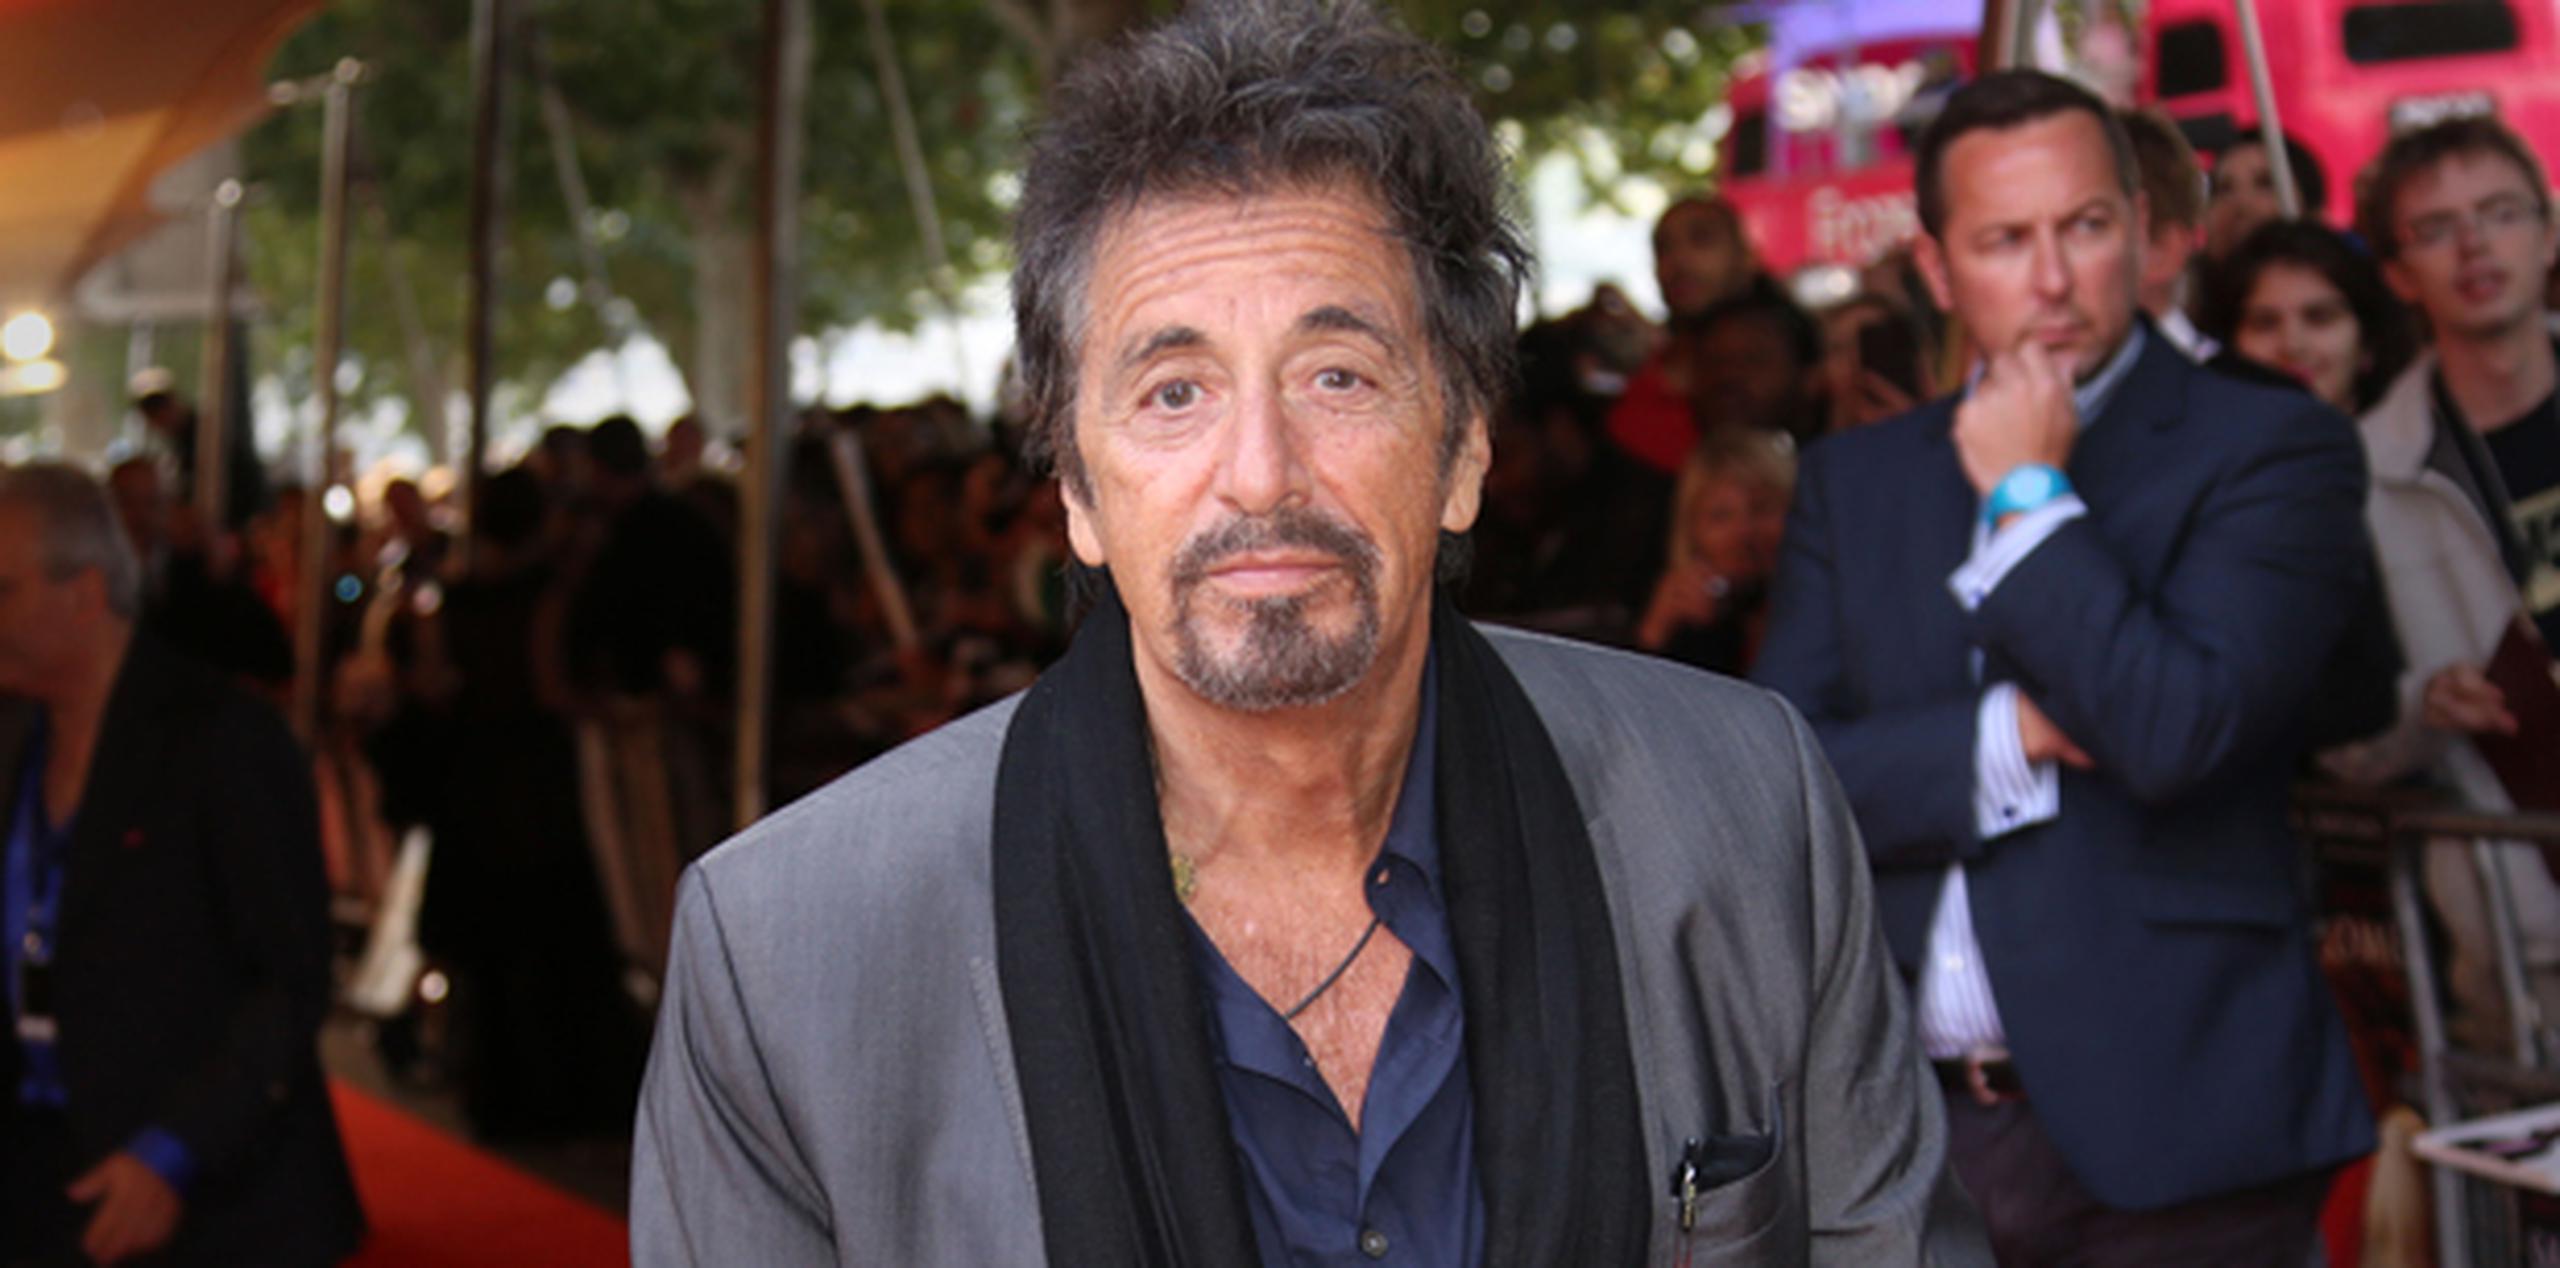 A los 74 años de edad, Pacino dice que a veces siente el peso de la edad. "Me siento diferente. No me levanto de la mesa tan fácilmente. Me gustaría, pero no puedo". (AP)